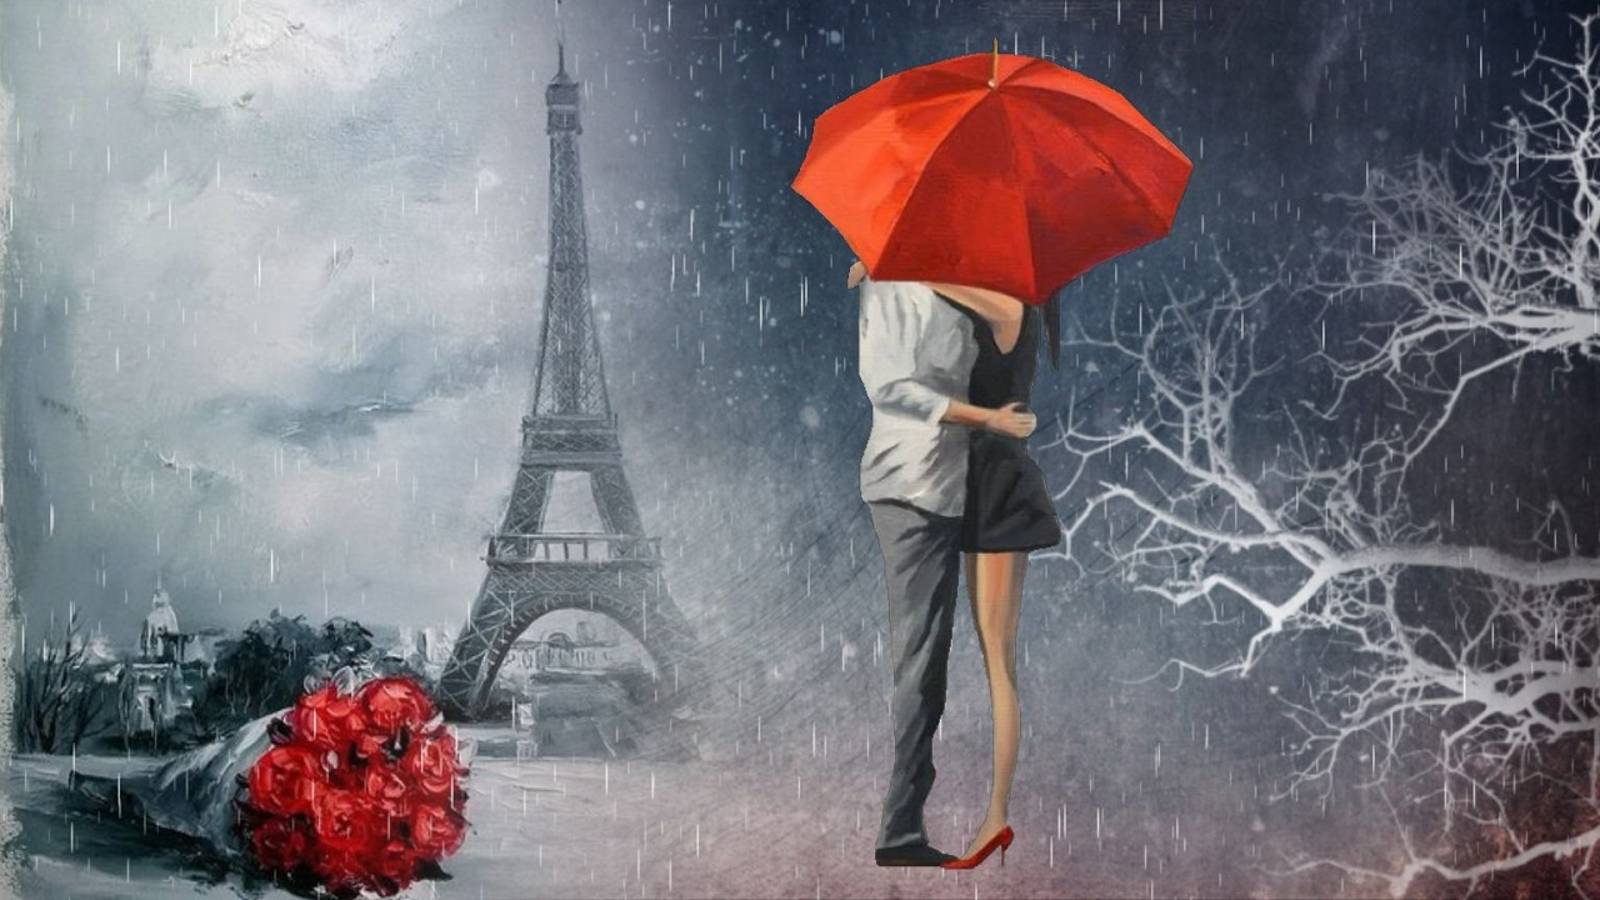 Двое под красным зонтом… Полные любви и романтики картины художника Ольги Дарчук…